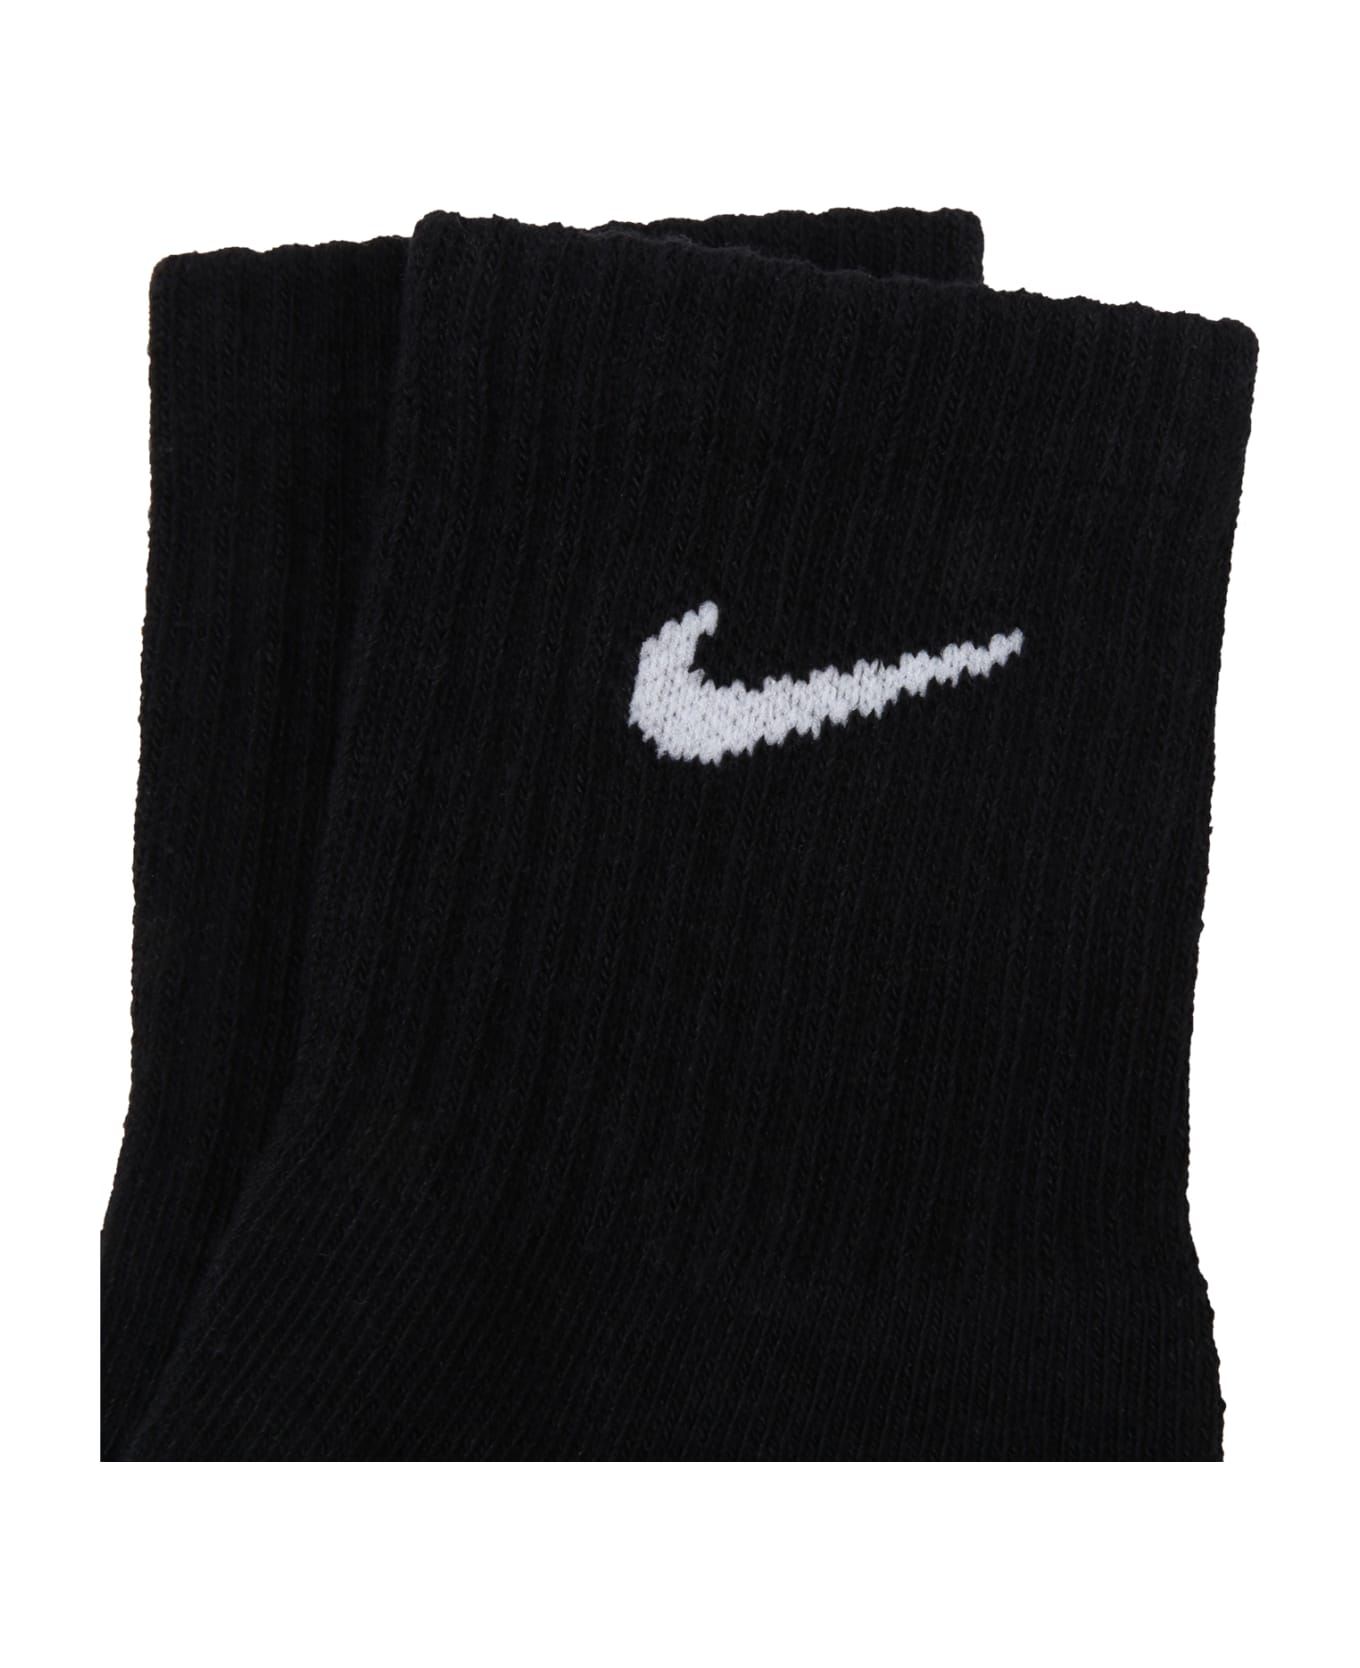 Nike Black Socks For Kids With White Logo - Black アンダーウェア